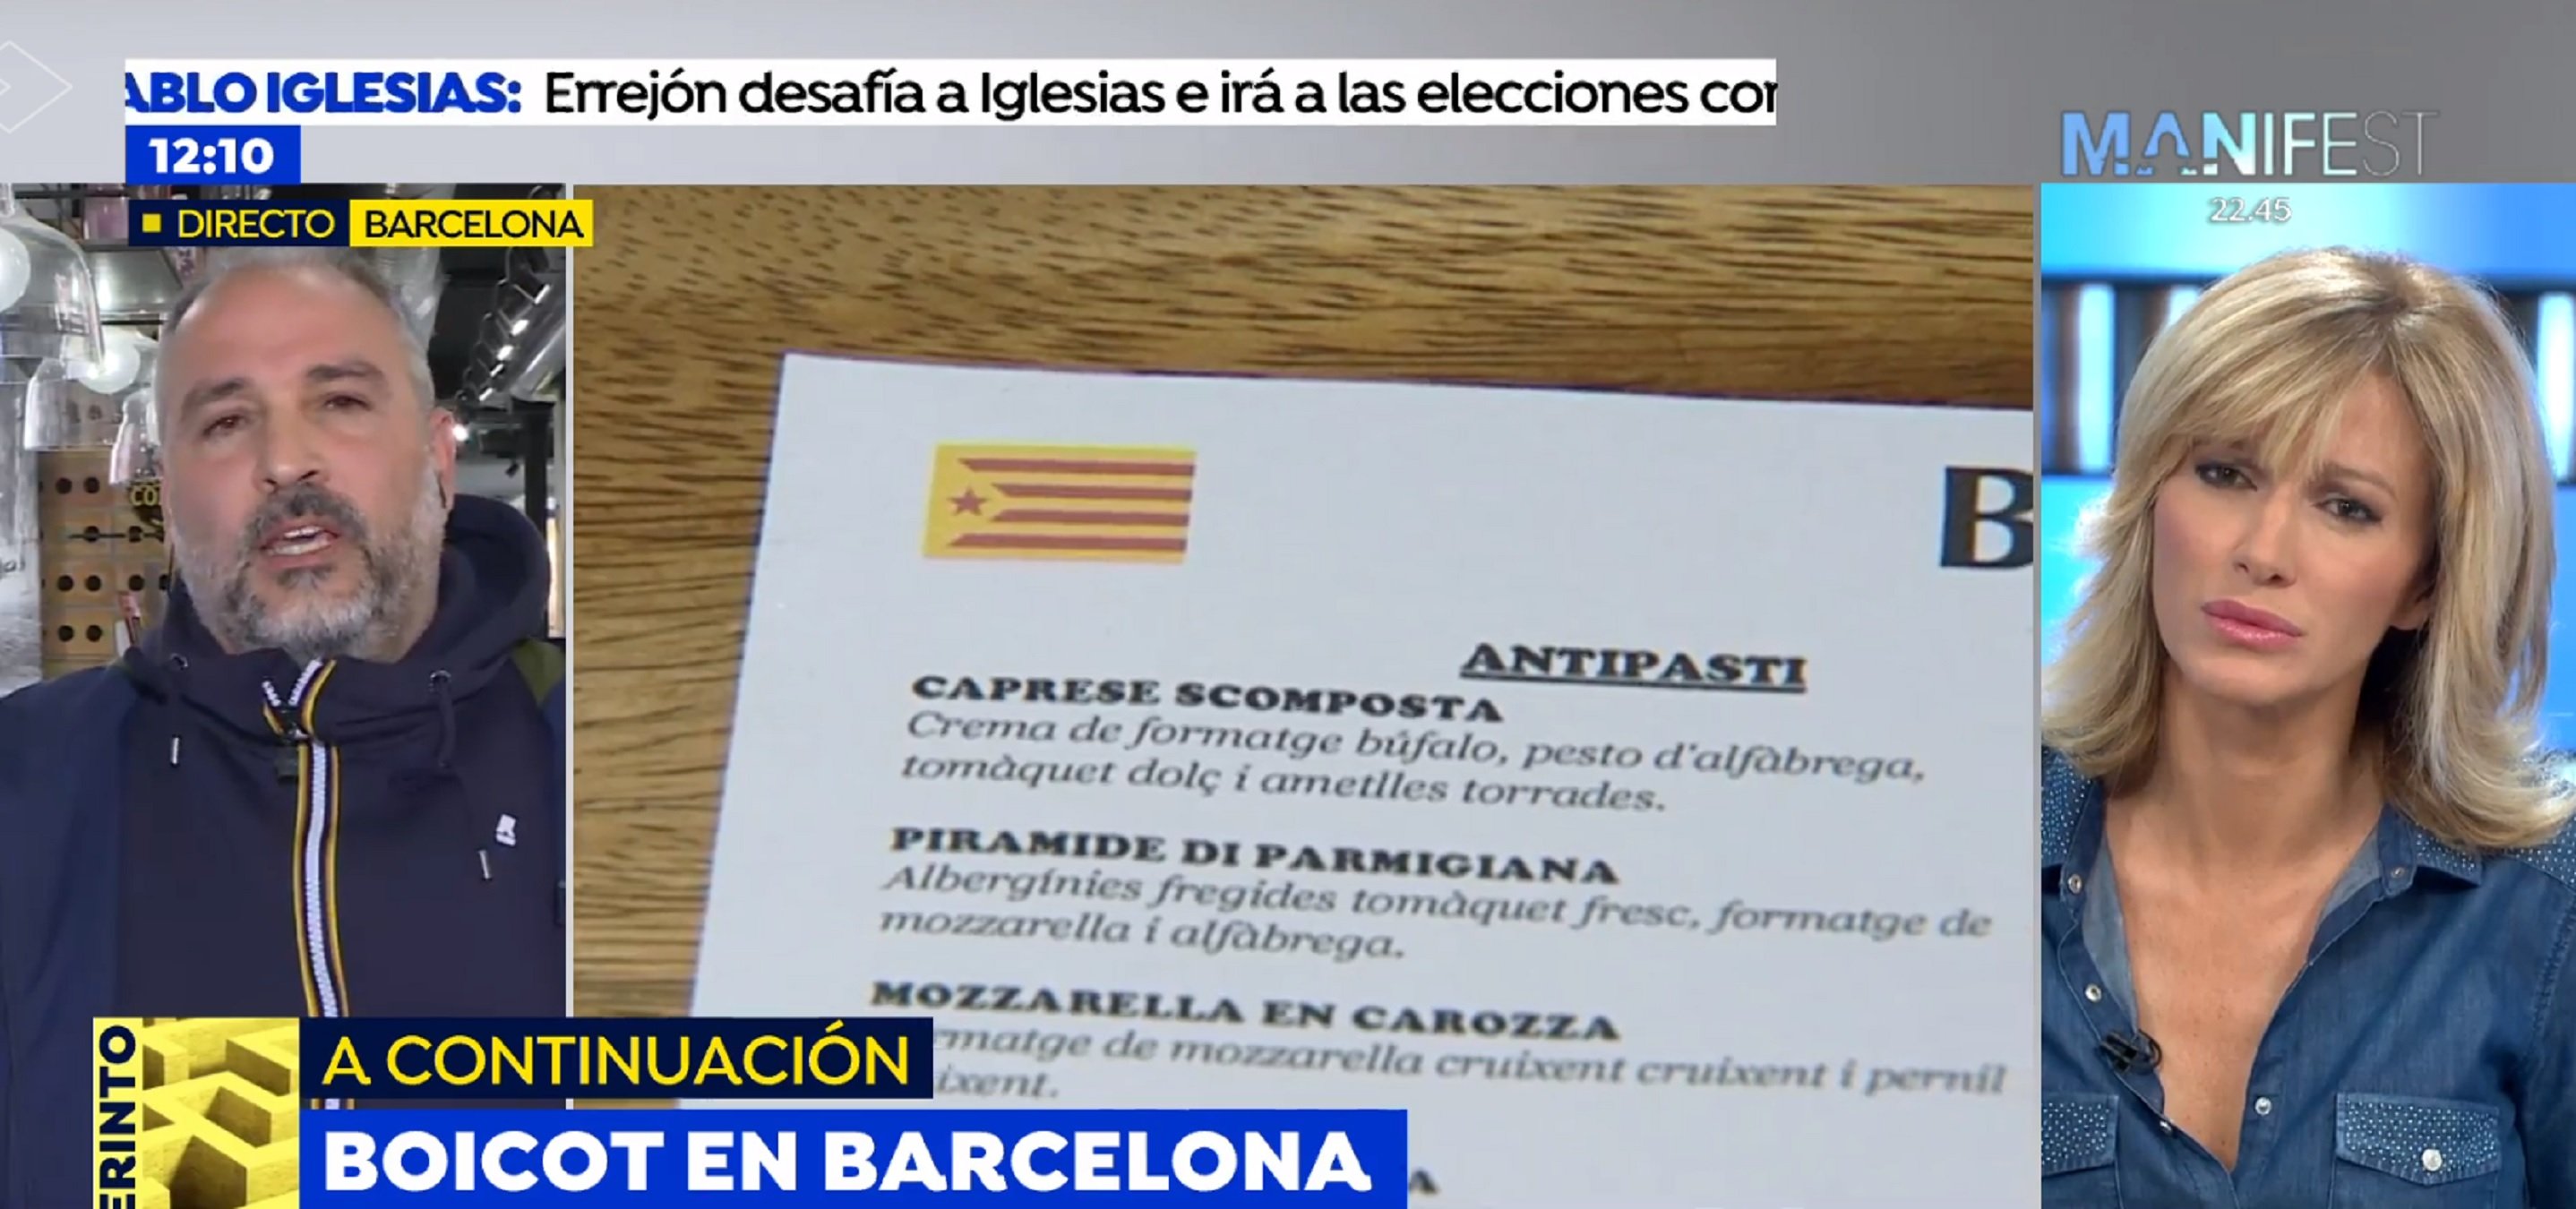 Griso i el pizzer que no dona la carta en català: "Mi estelada es un error"